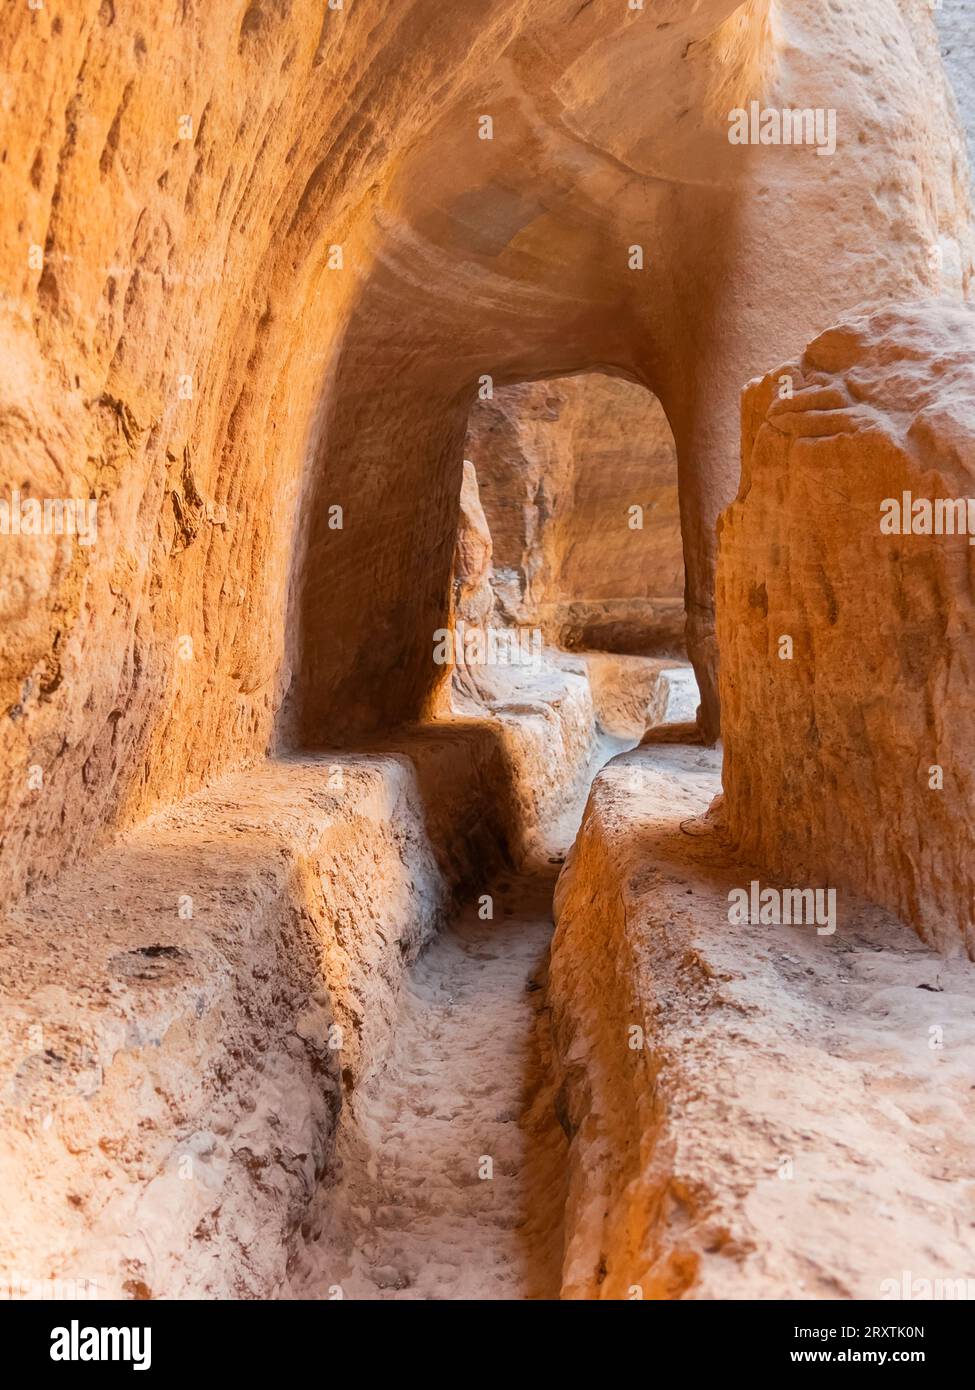 Le Siq, entrée du parc archéologique de Petra, site du patrimoine mondial de l'UNESCO, l'une des sept nouvelles merveilles du monde, Petra, Jordanie, Moyen-Orient Banque D'Images